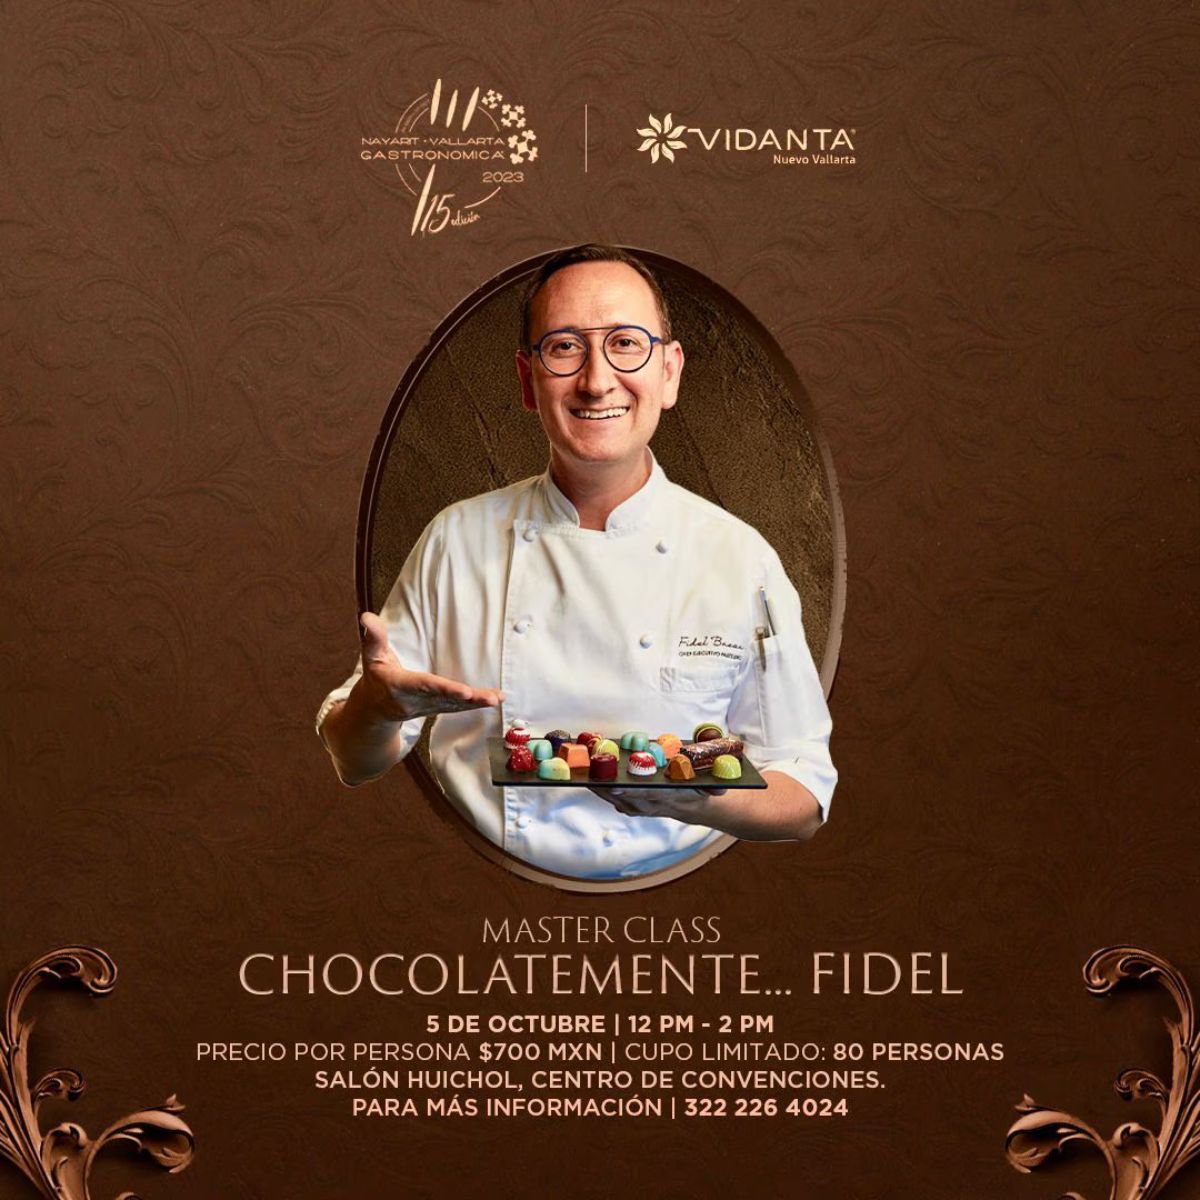 La masterclass de chocolatería con el chef Fidel Baeza en Vidanta.